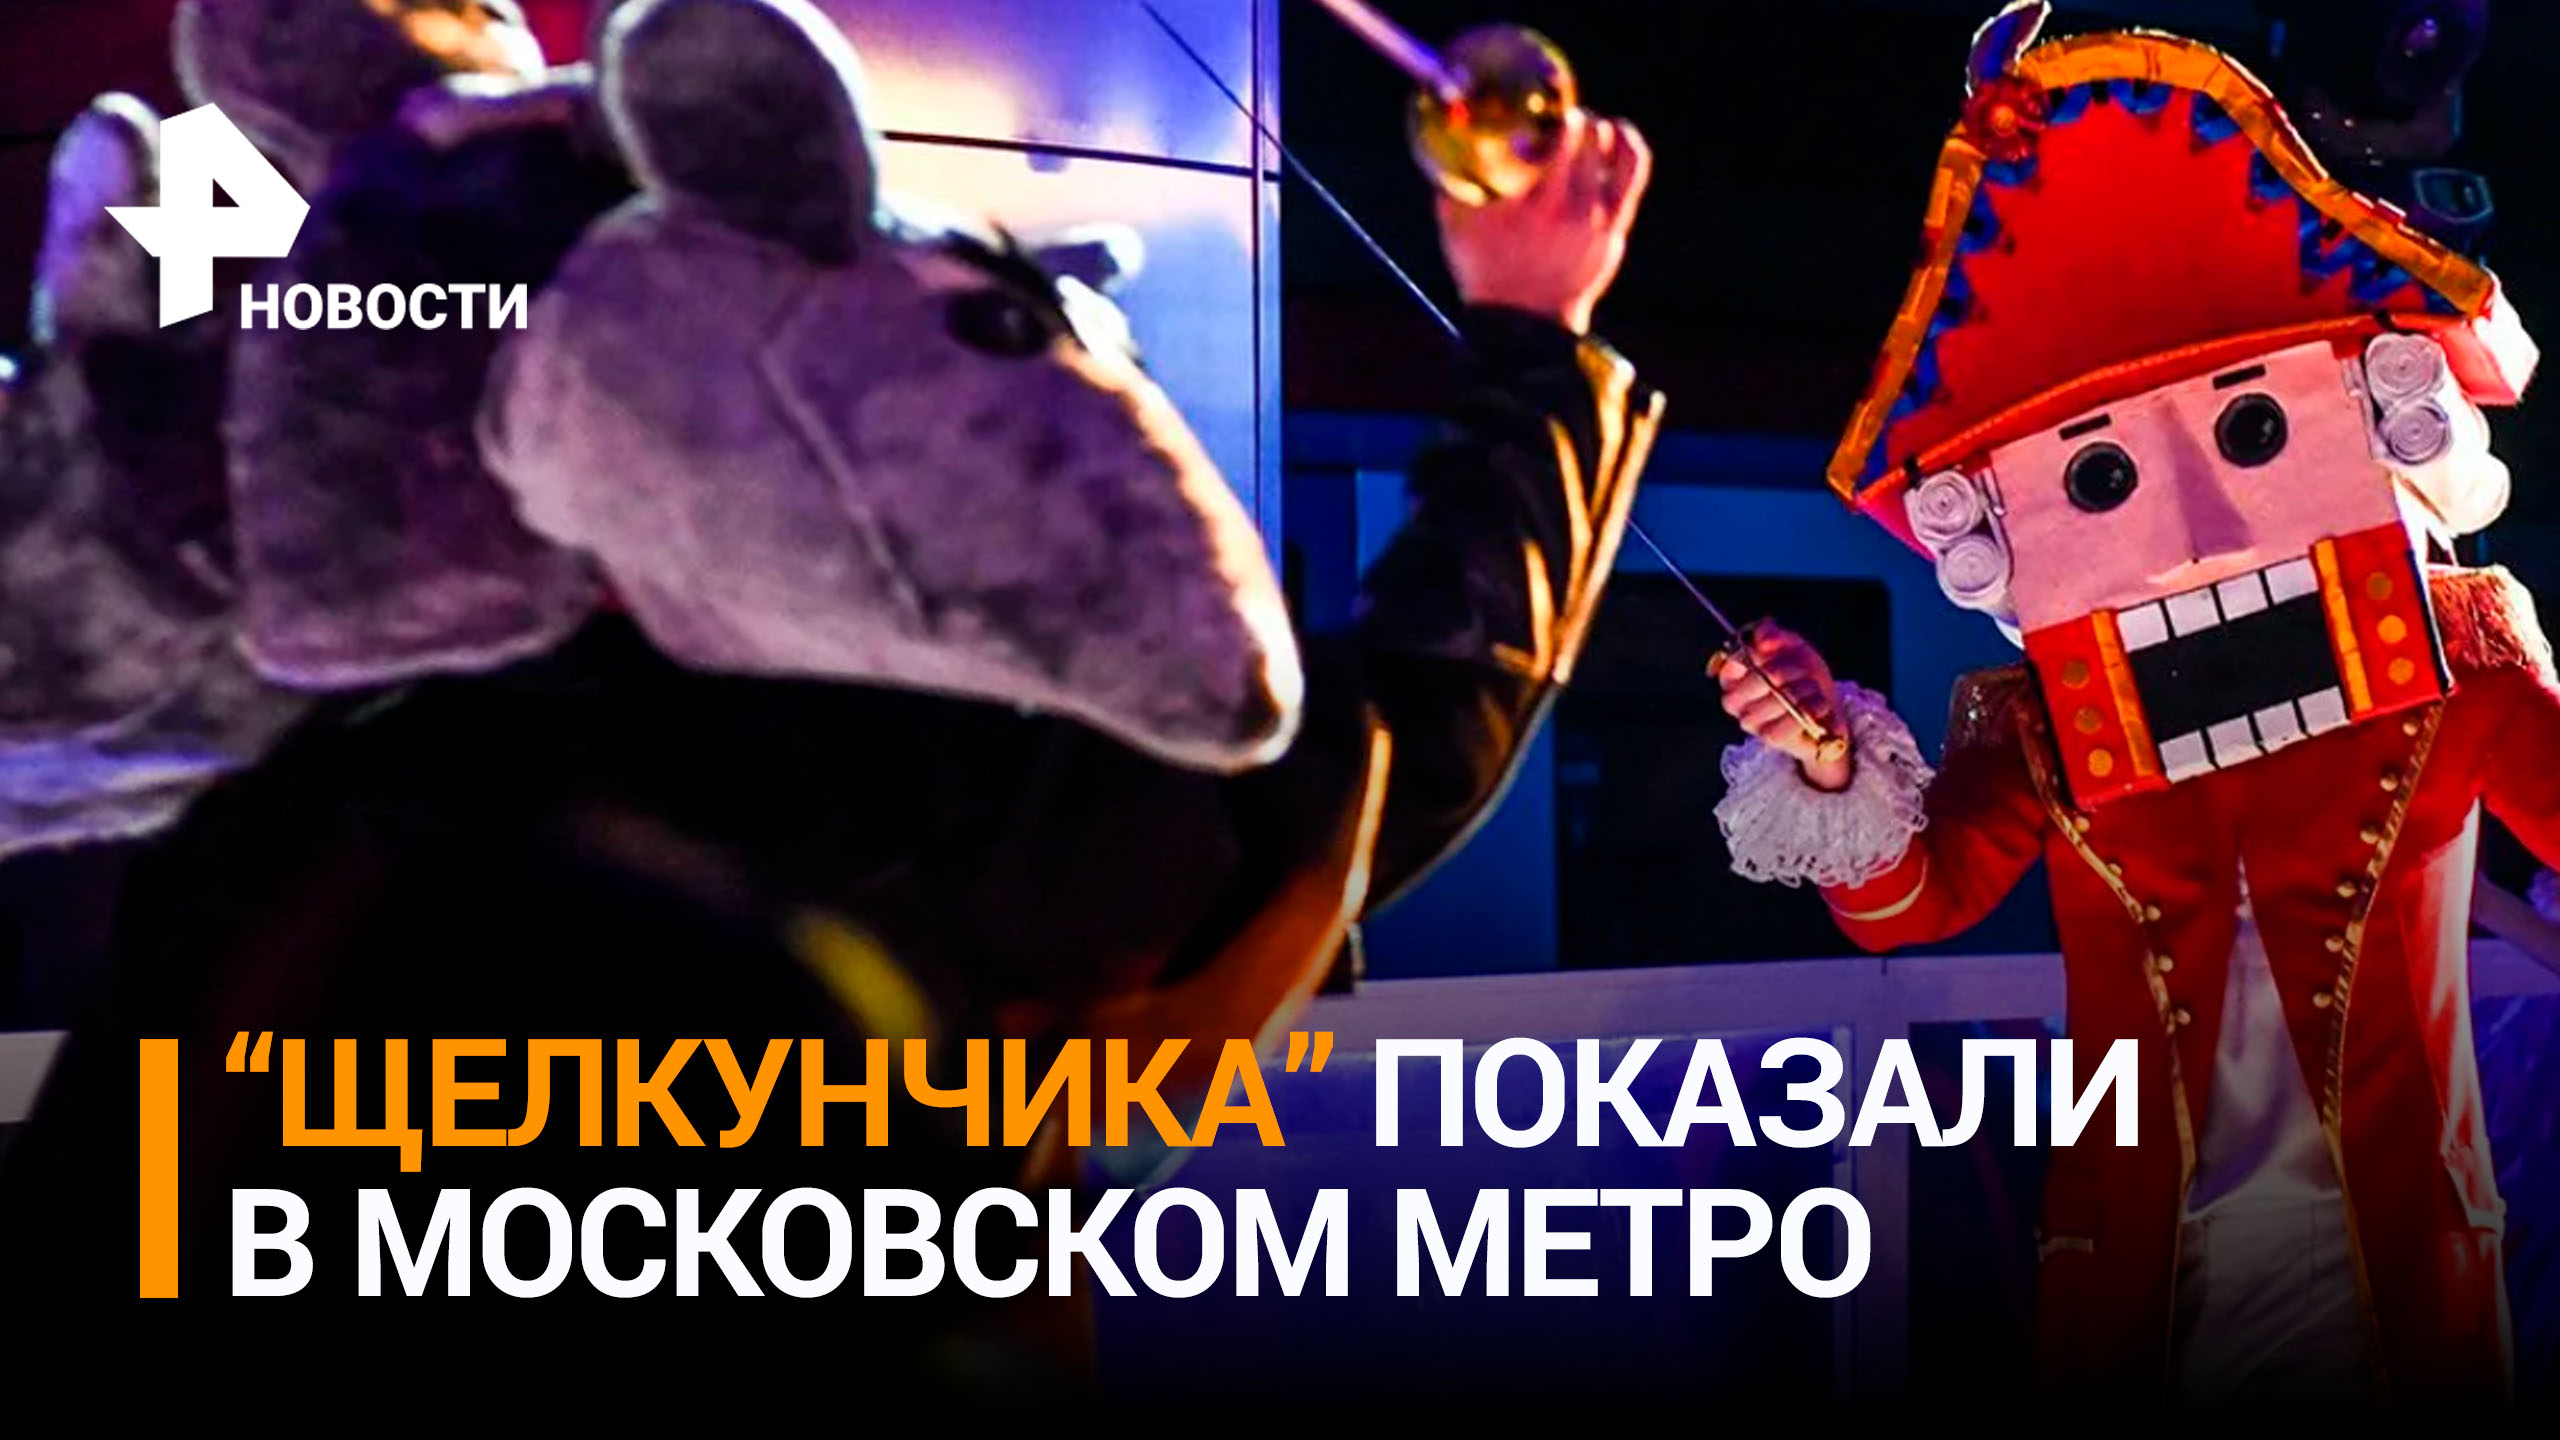 "Щелкунчик — это волшебство, это мечта": зрители рассказали о представлении в метро / РЕН Новости